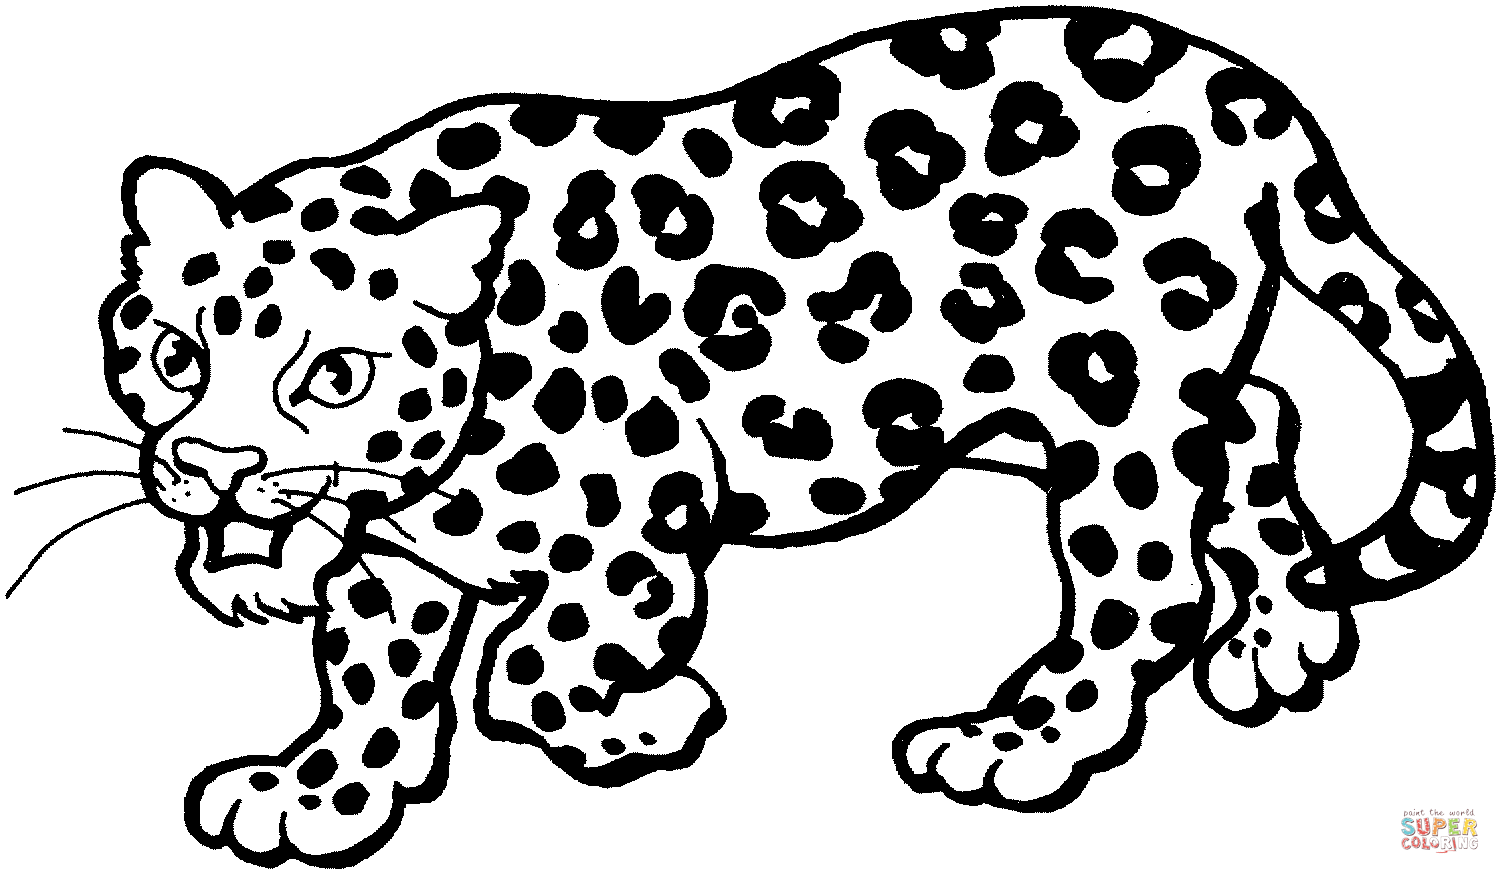 Розмальовки Леопард розфарбування, леопард, готується нападати, хижі кішки